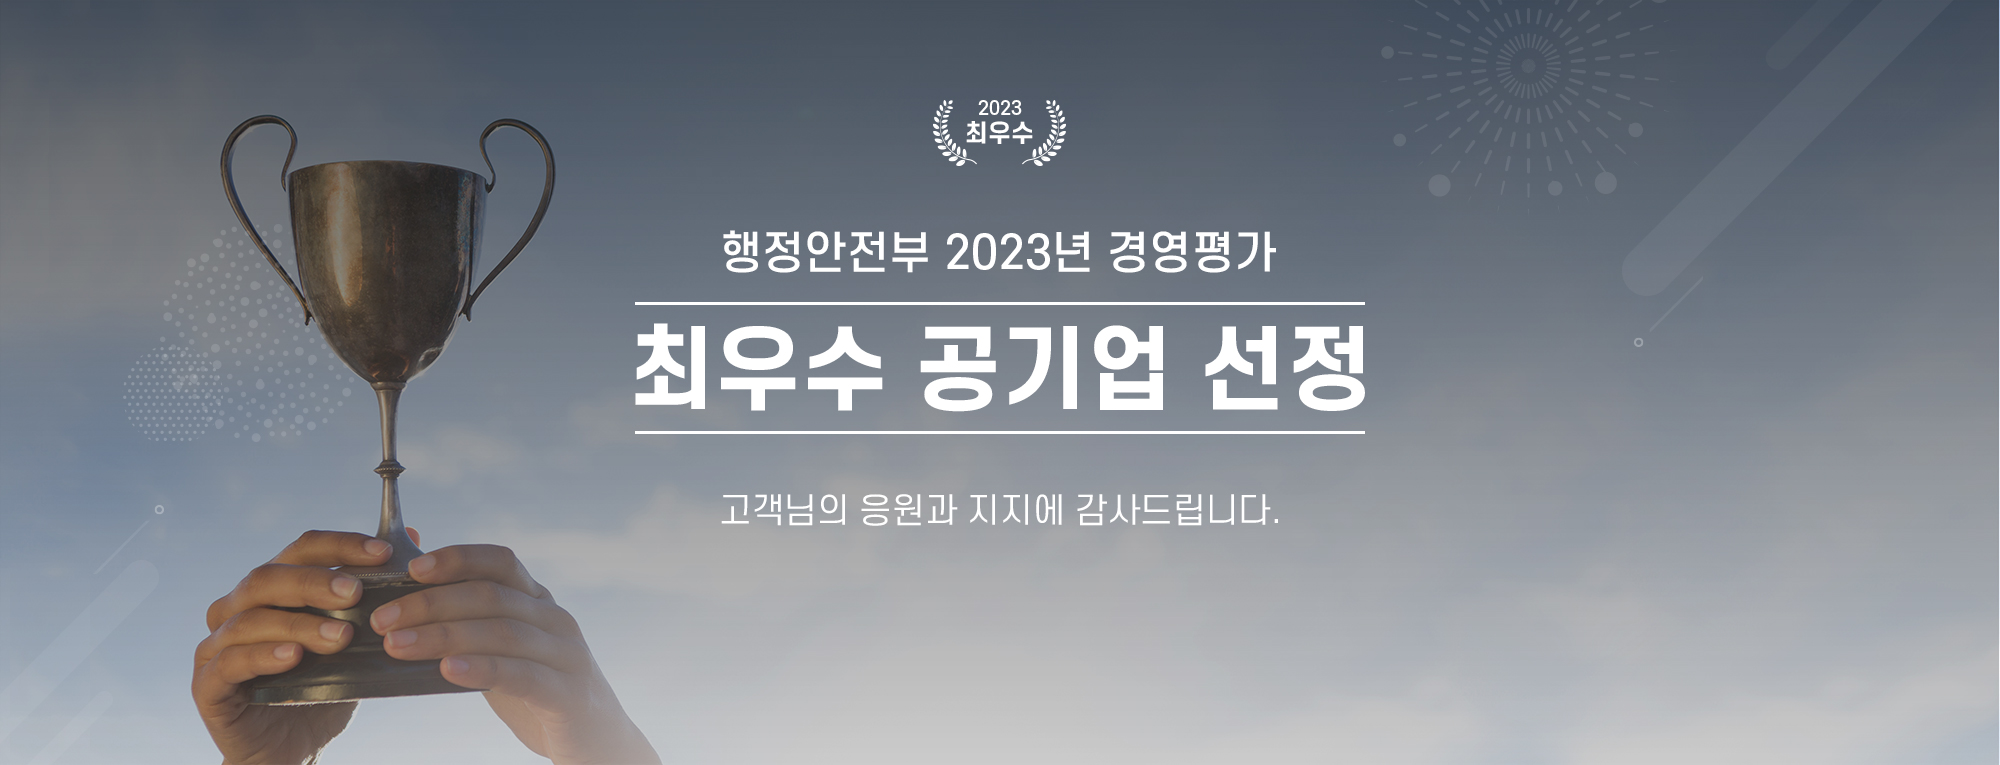 행정안전부 2023년 경영평가 최우수 공기업 선정 
메인 첫 화면